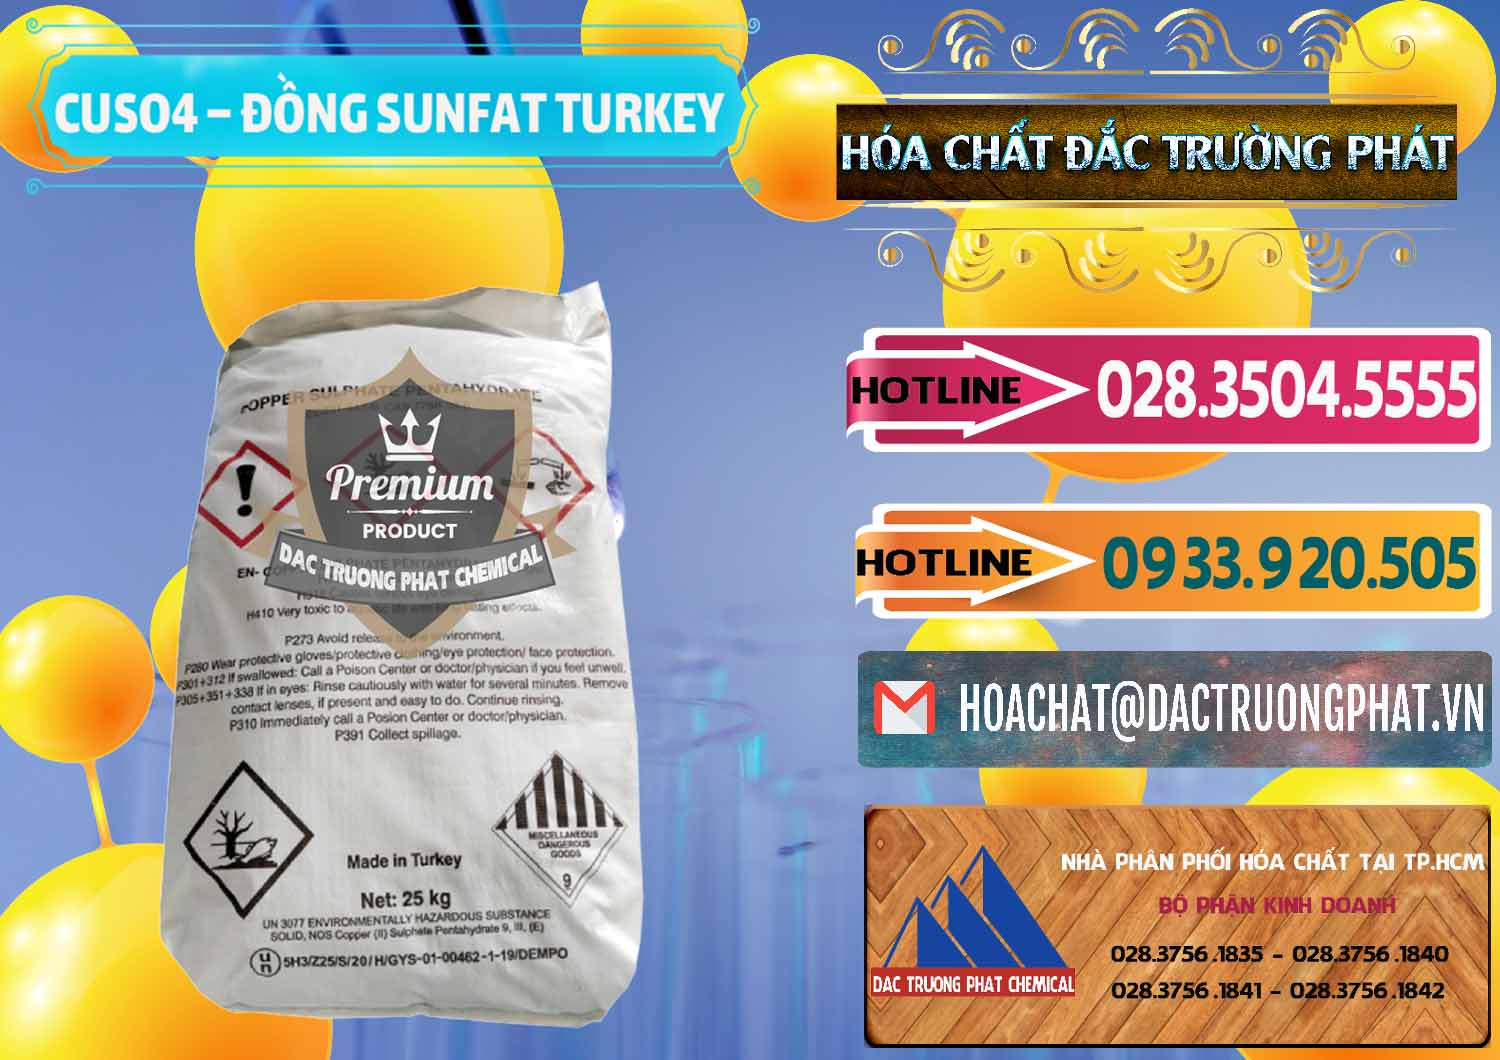 Công ty chuyên kinh doanh _ bán CuSO4 – Đồng Sunfat Thổ Nhĩ Kỳ Turkey - 0481 - Công ty kinh doanh & cung cấp hóa chất tại TP.HCM - dactruongphat.vn